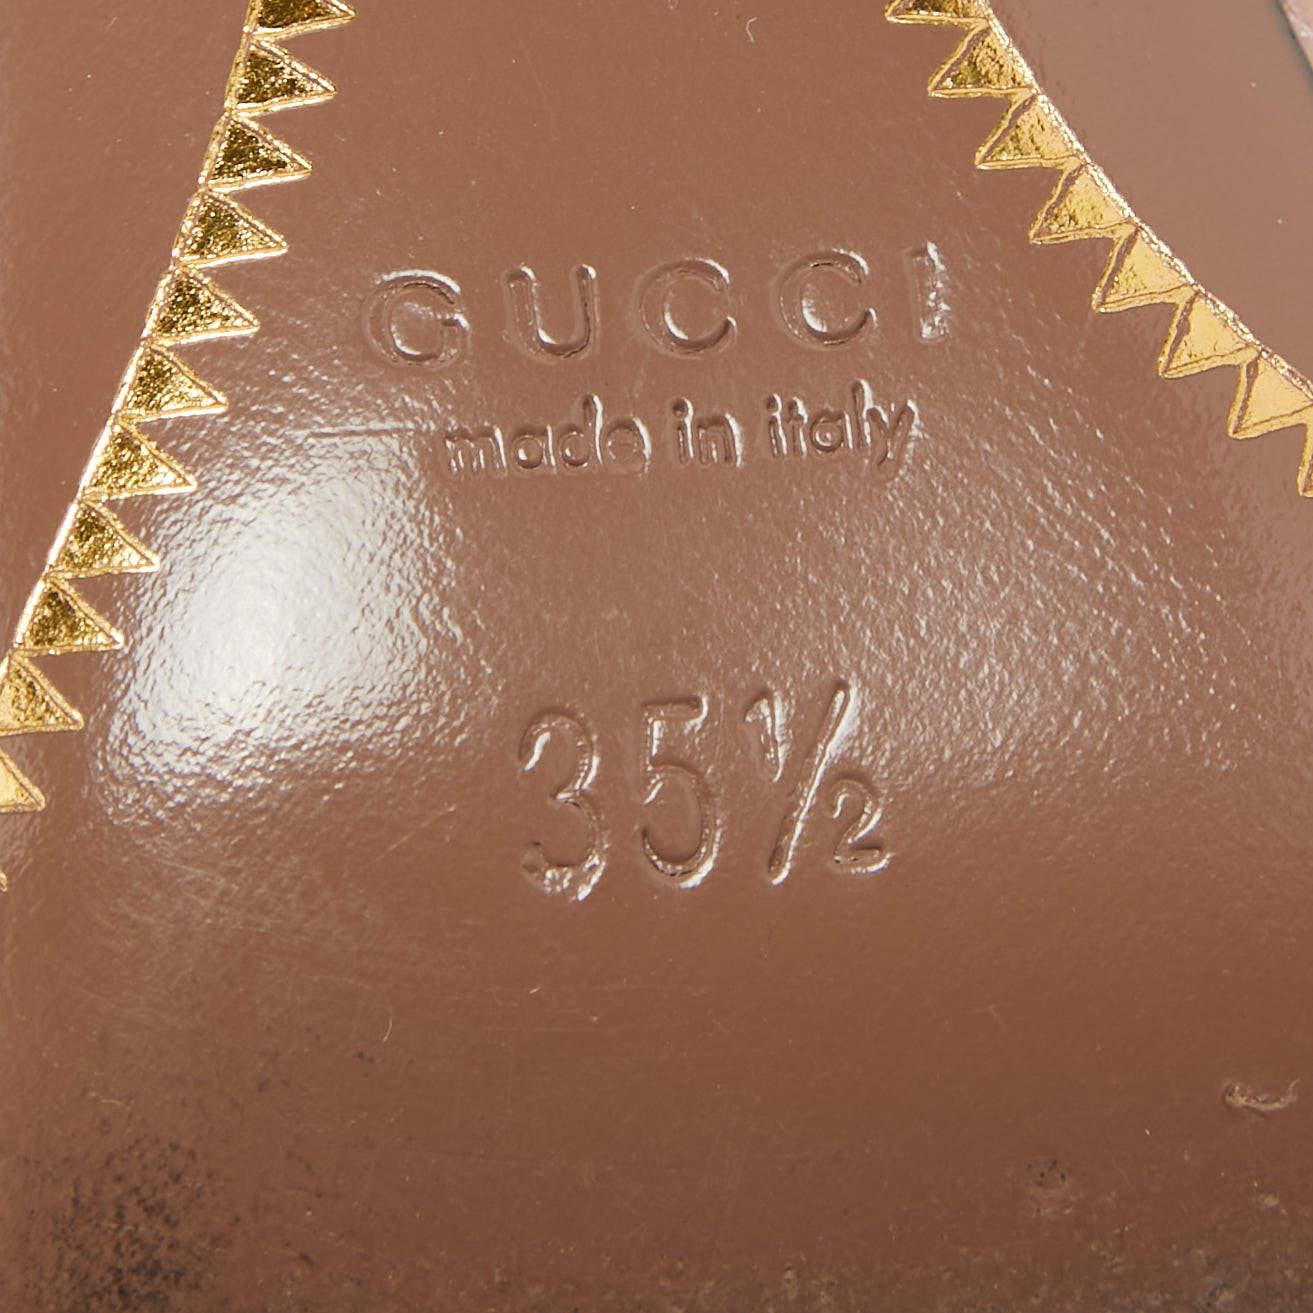 Gucci Pink Leather Guccissima Pumps Size 35.5 In Good Condition For Sale In Dubai, Al Qouz 2